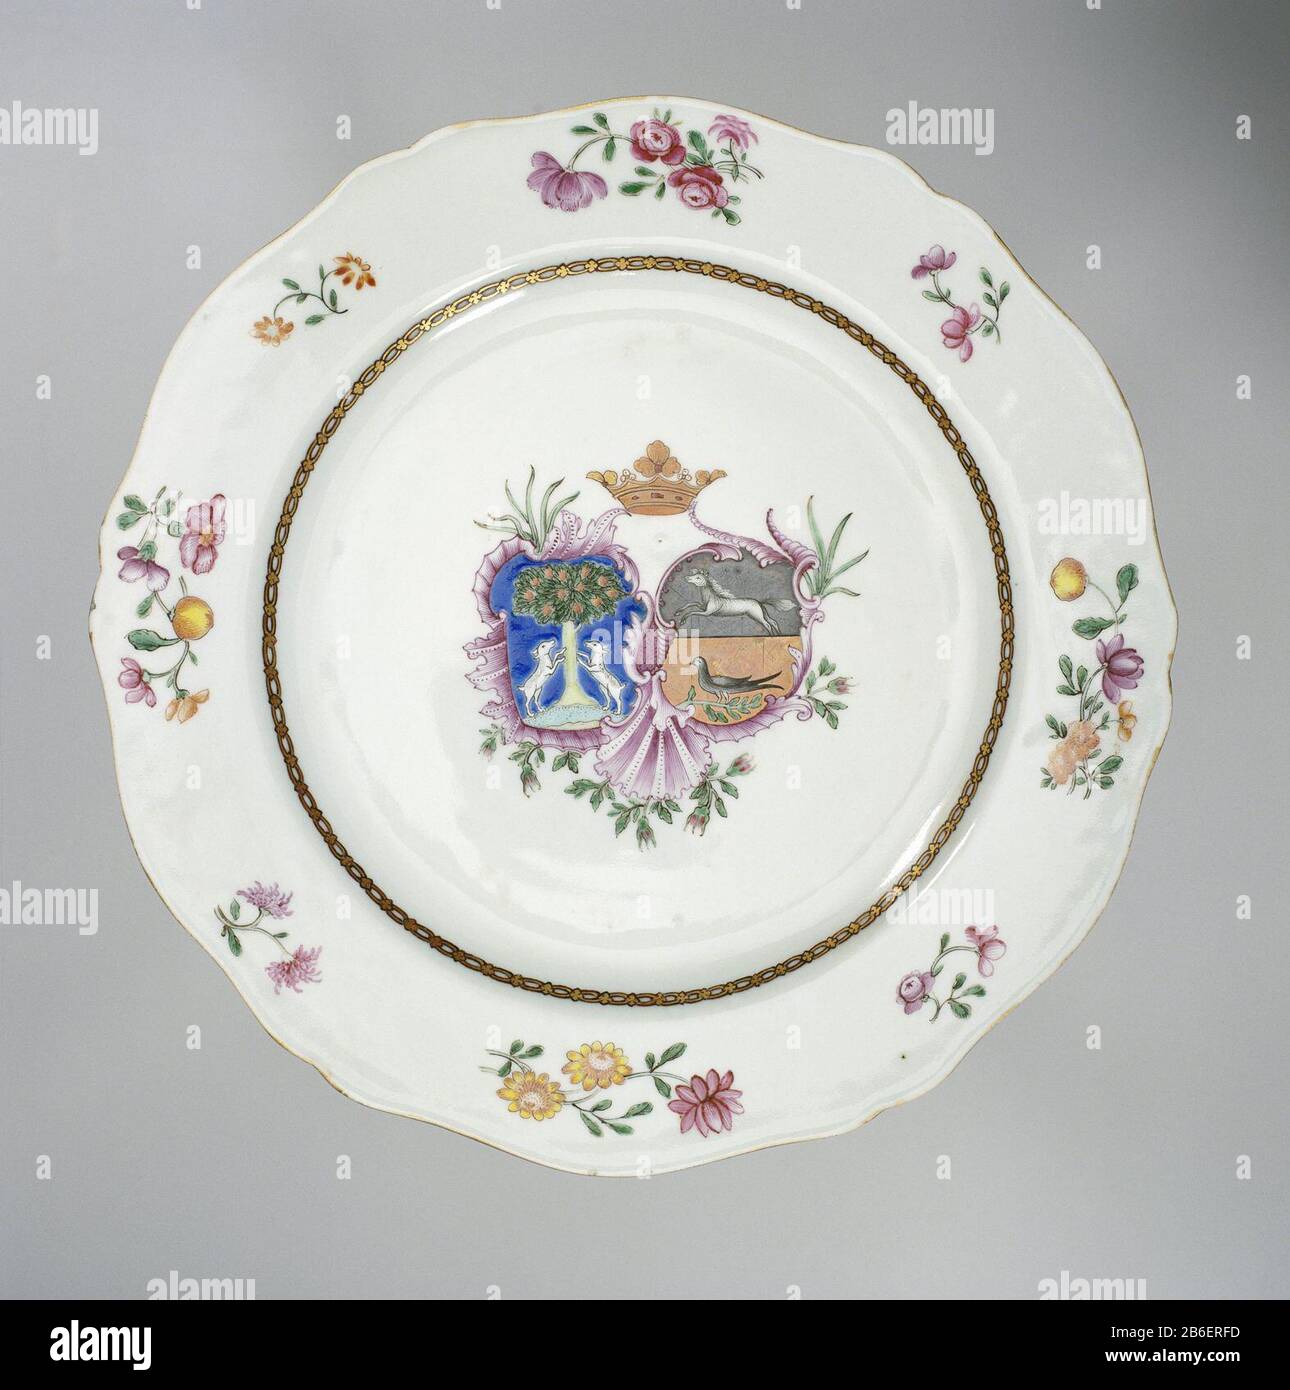 Plate with crowned coat of arms and flower branches Bord van porselein met geschulpte rand, beschilderd op glazuur in blauw, rood, roze, groen, geel, paars, zwart en goud. Op